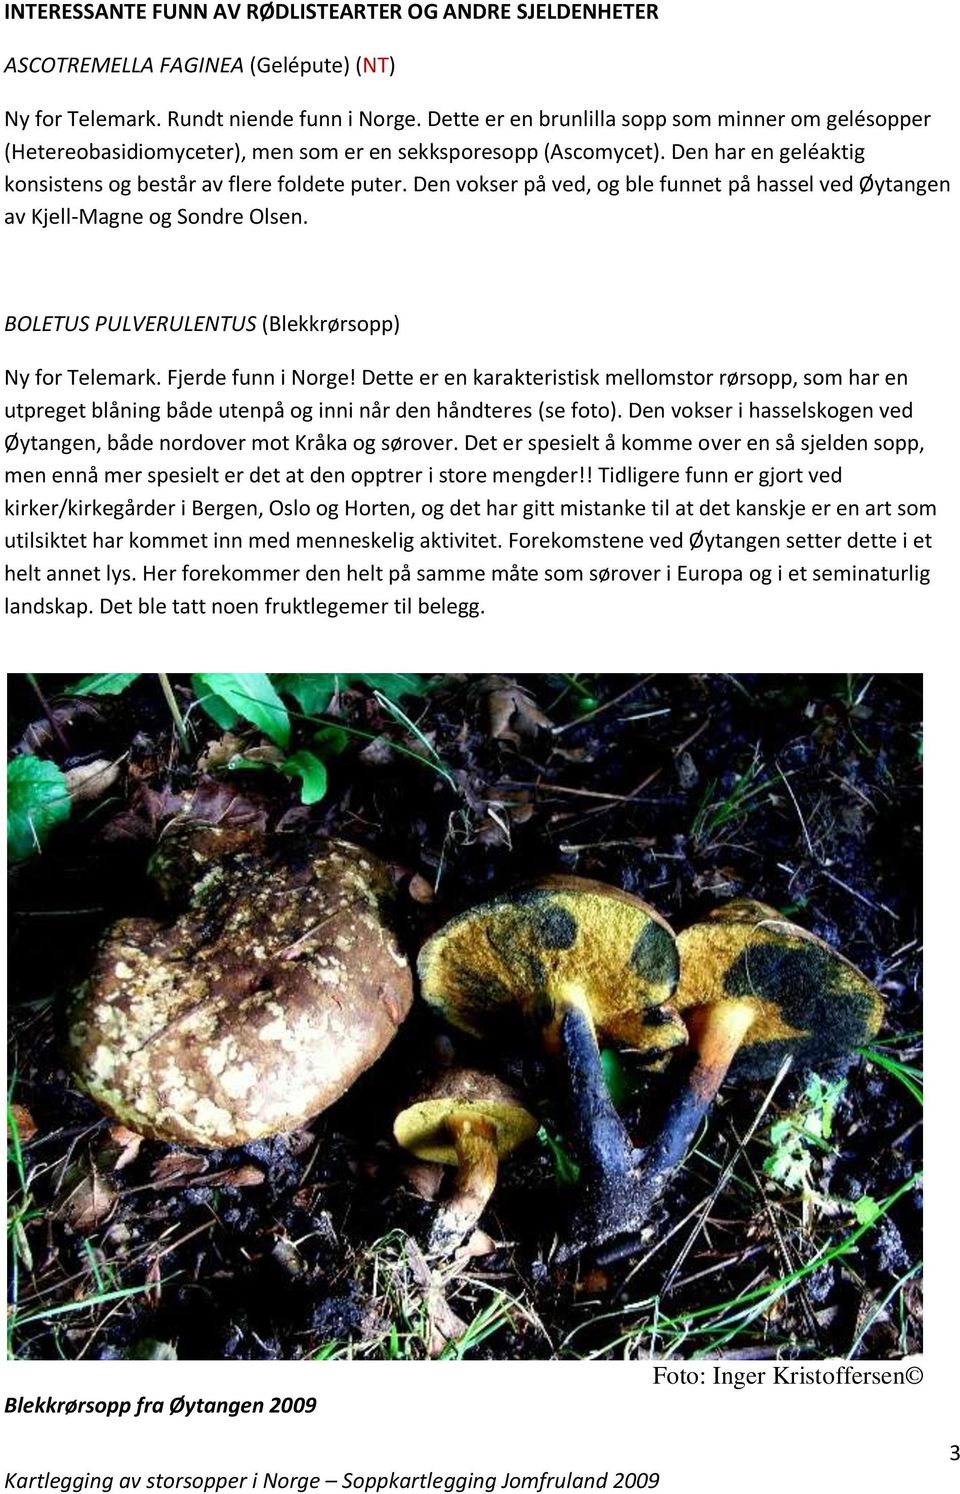 Den vokser på ved, og ble funnet på hassel ved Øytangen av Kjell-Magne og Sondre Olsen. BOLETUS PULVERULENTUS (Blekkrørsopp) Ny for Telemark. Fjerde funn i Norge!